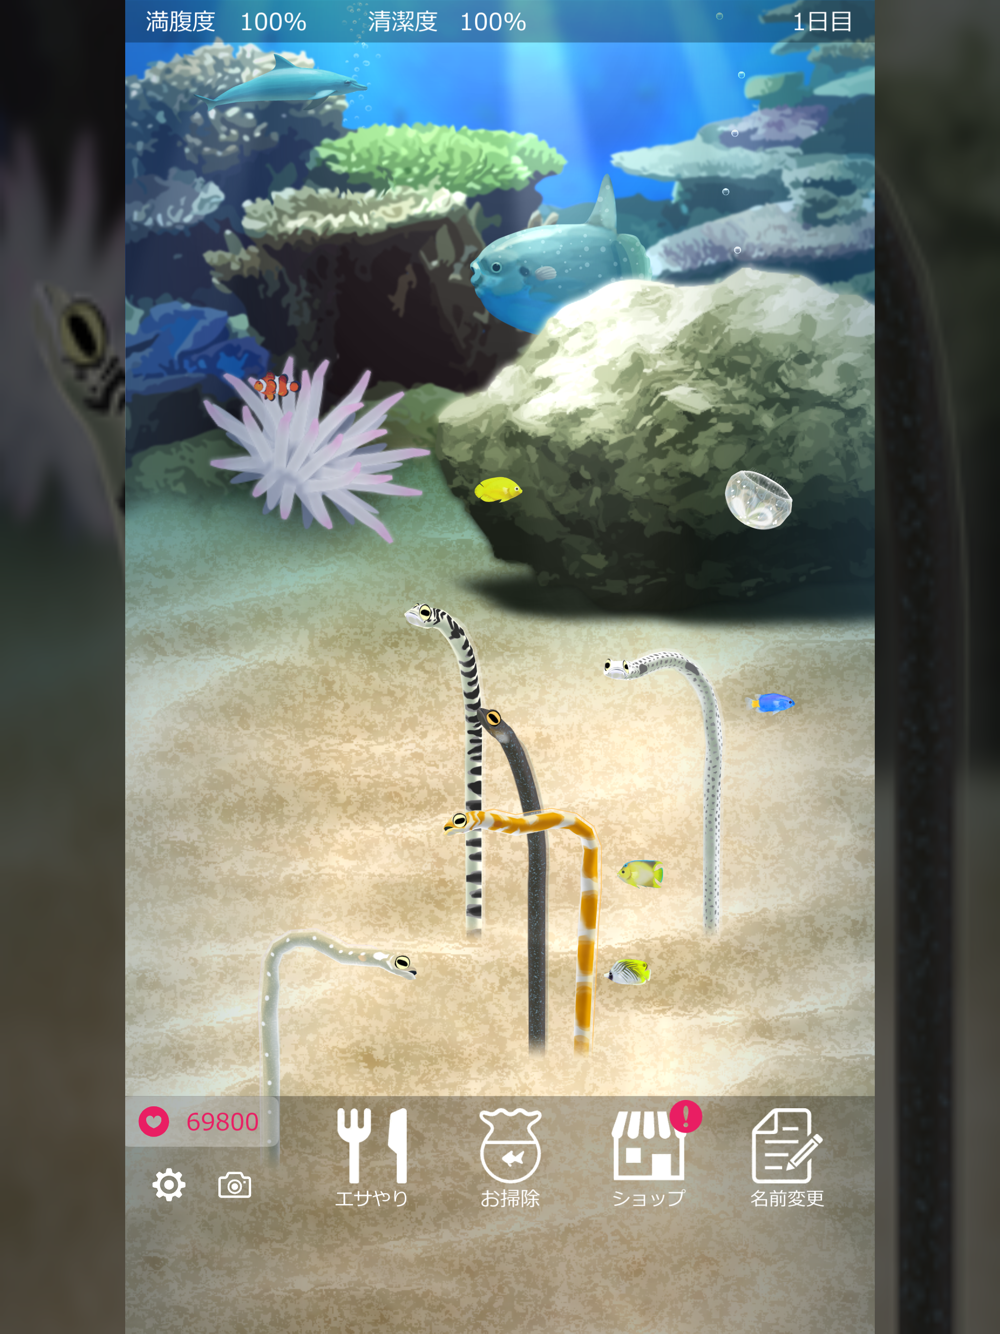 癒しのチンアナゴ育成ゲーム 癒しの育成ゲームシリーズ Free Download App For Iphone Steprimo Com